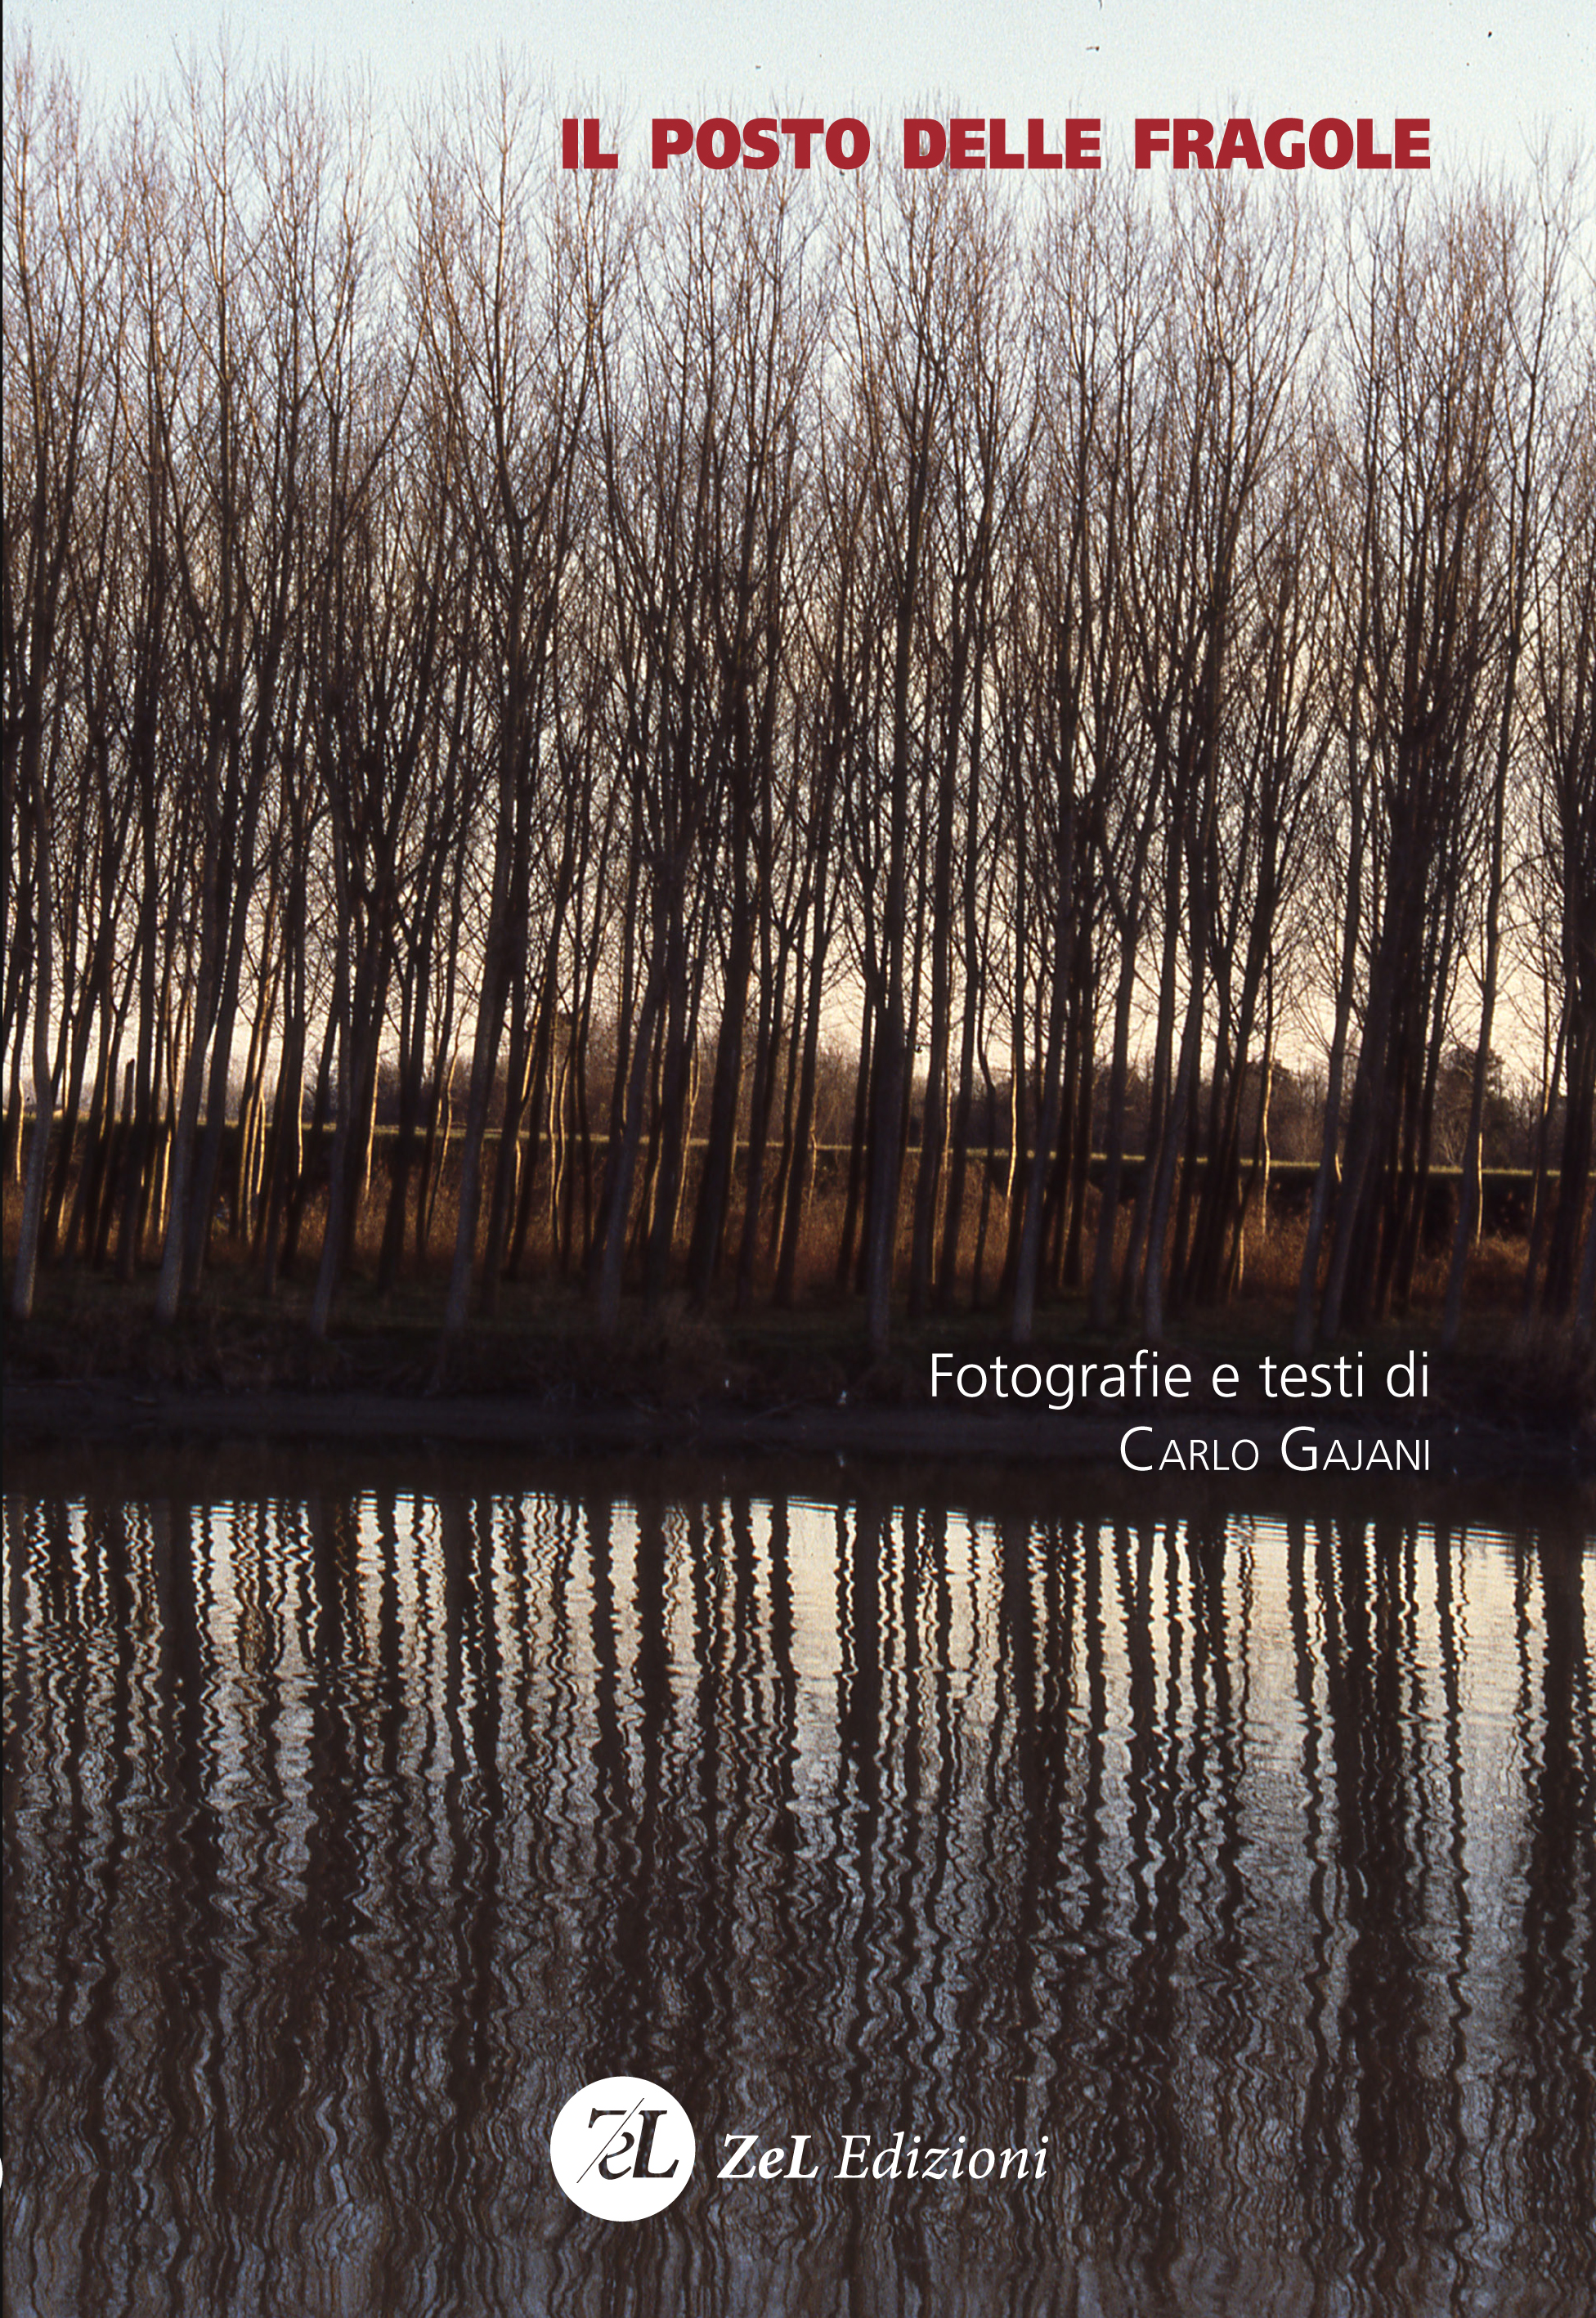 "IL POSTO DELLE FRAGOLE" - Presentazione dell'omonimo volume di fotografie e testi di Carlo Gajani